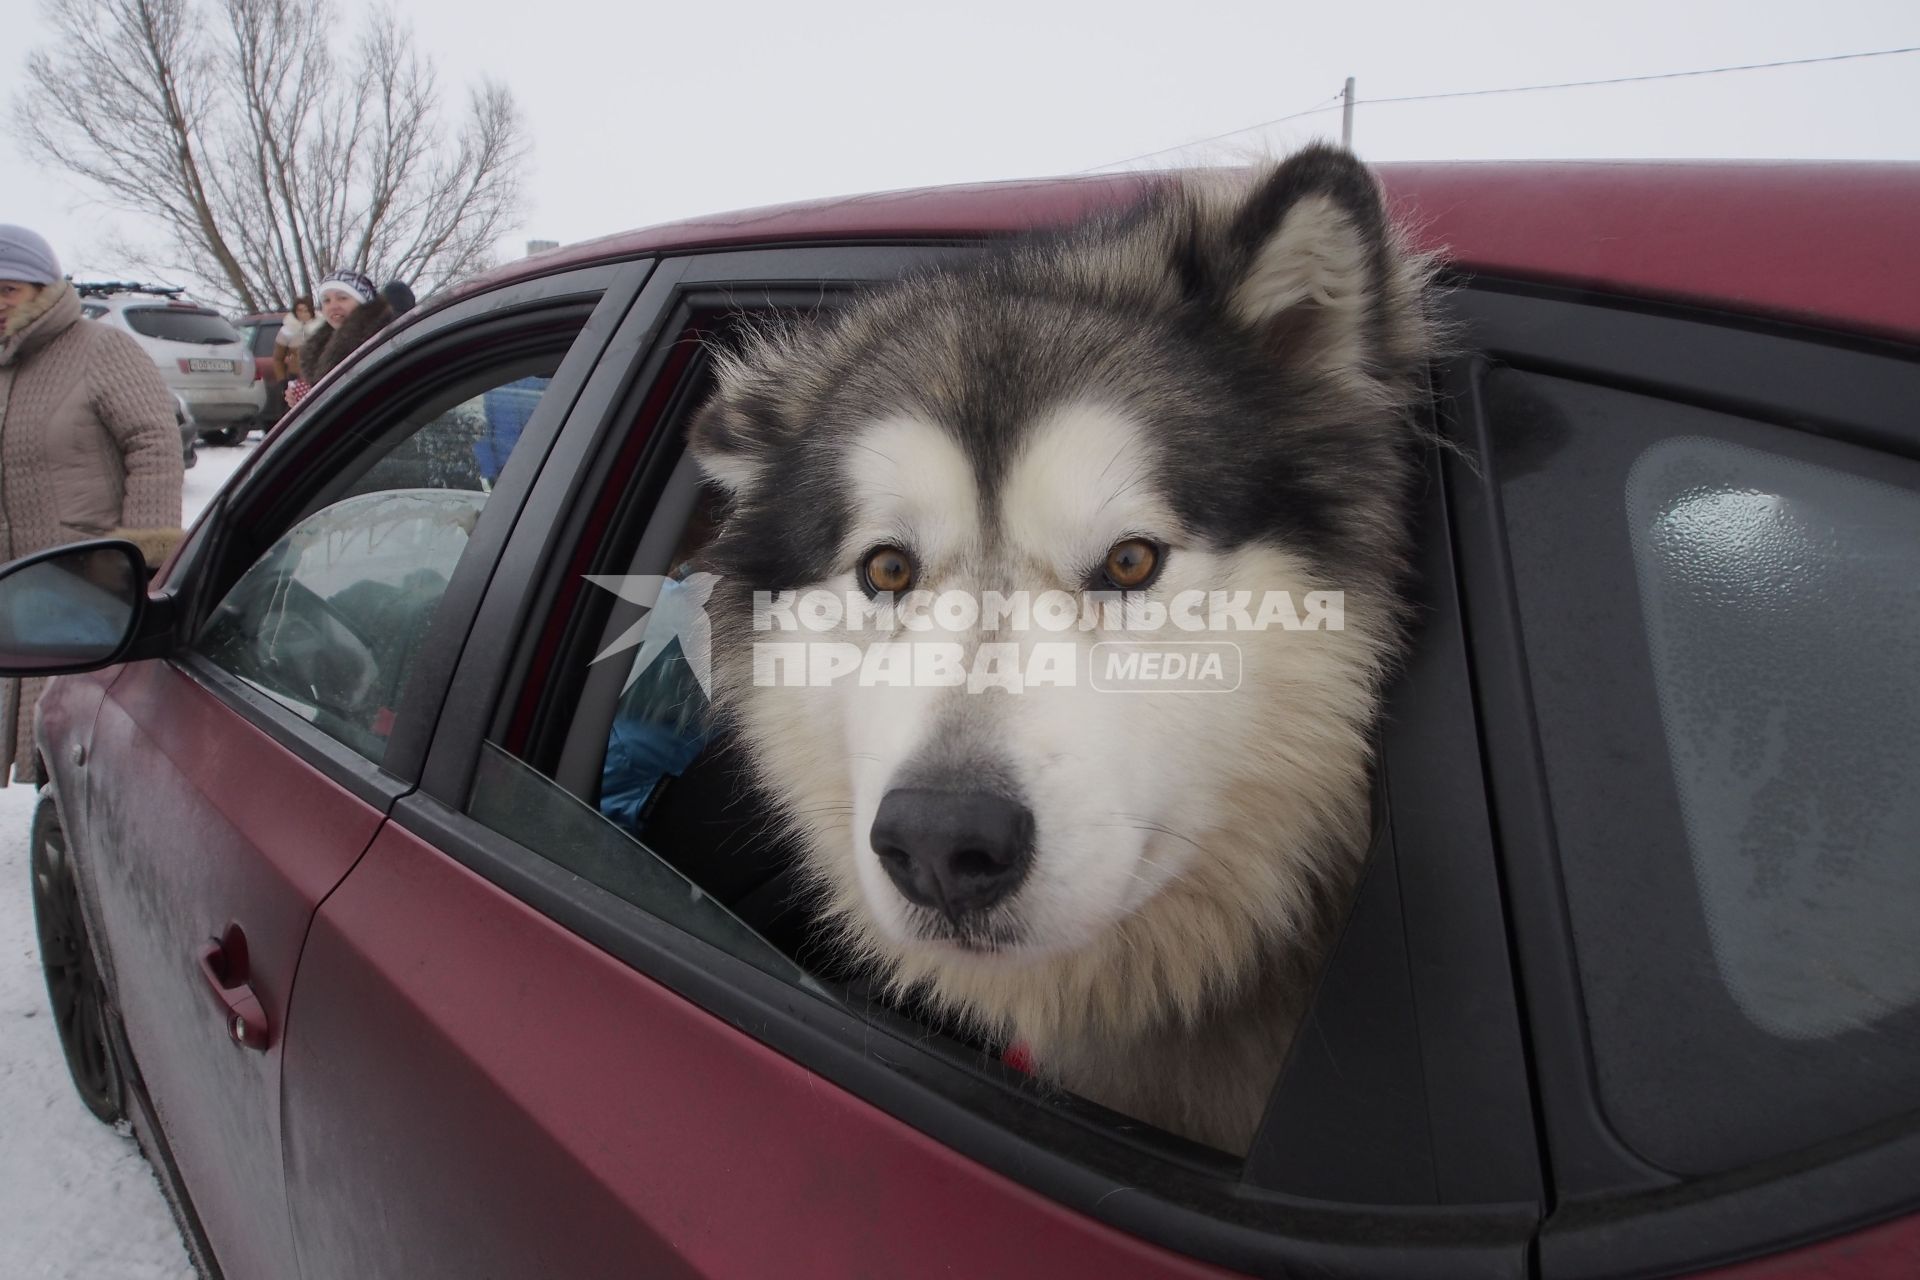 Тульская область, с. Монастырщино. Собака породы хаски выглядывает из окна машины во время семейного спортивного праздника `Большой тур `Куликово поле`.